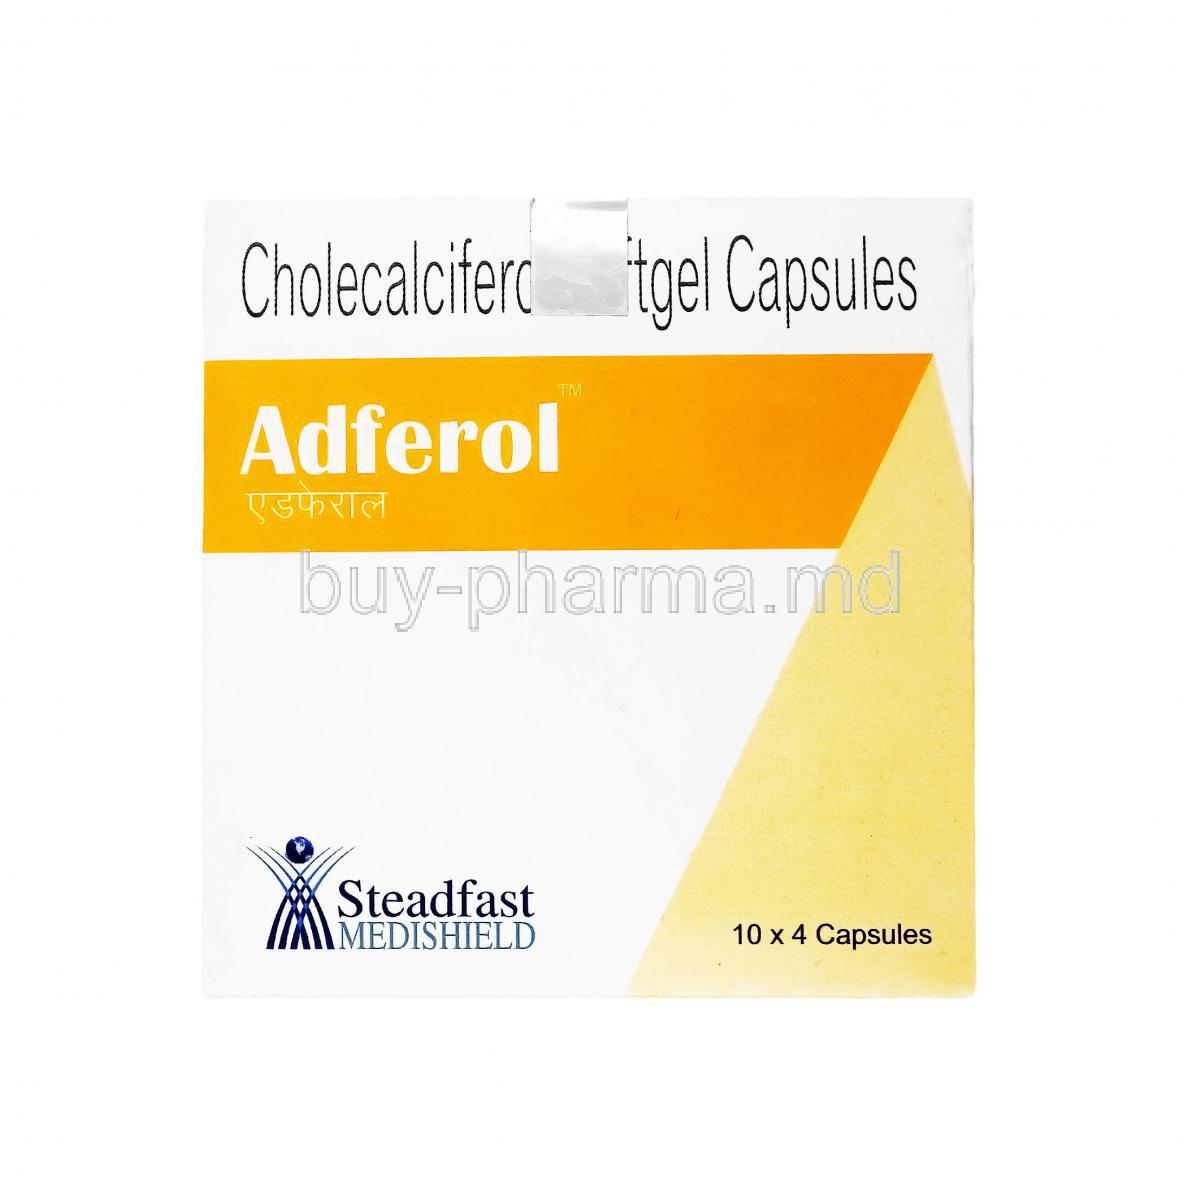 Adferol, Cholecalciferol